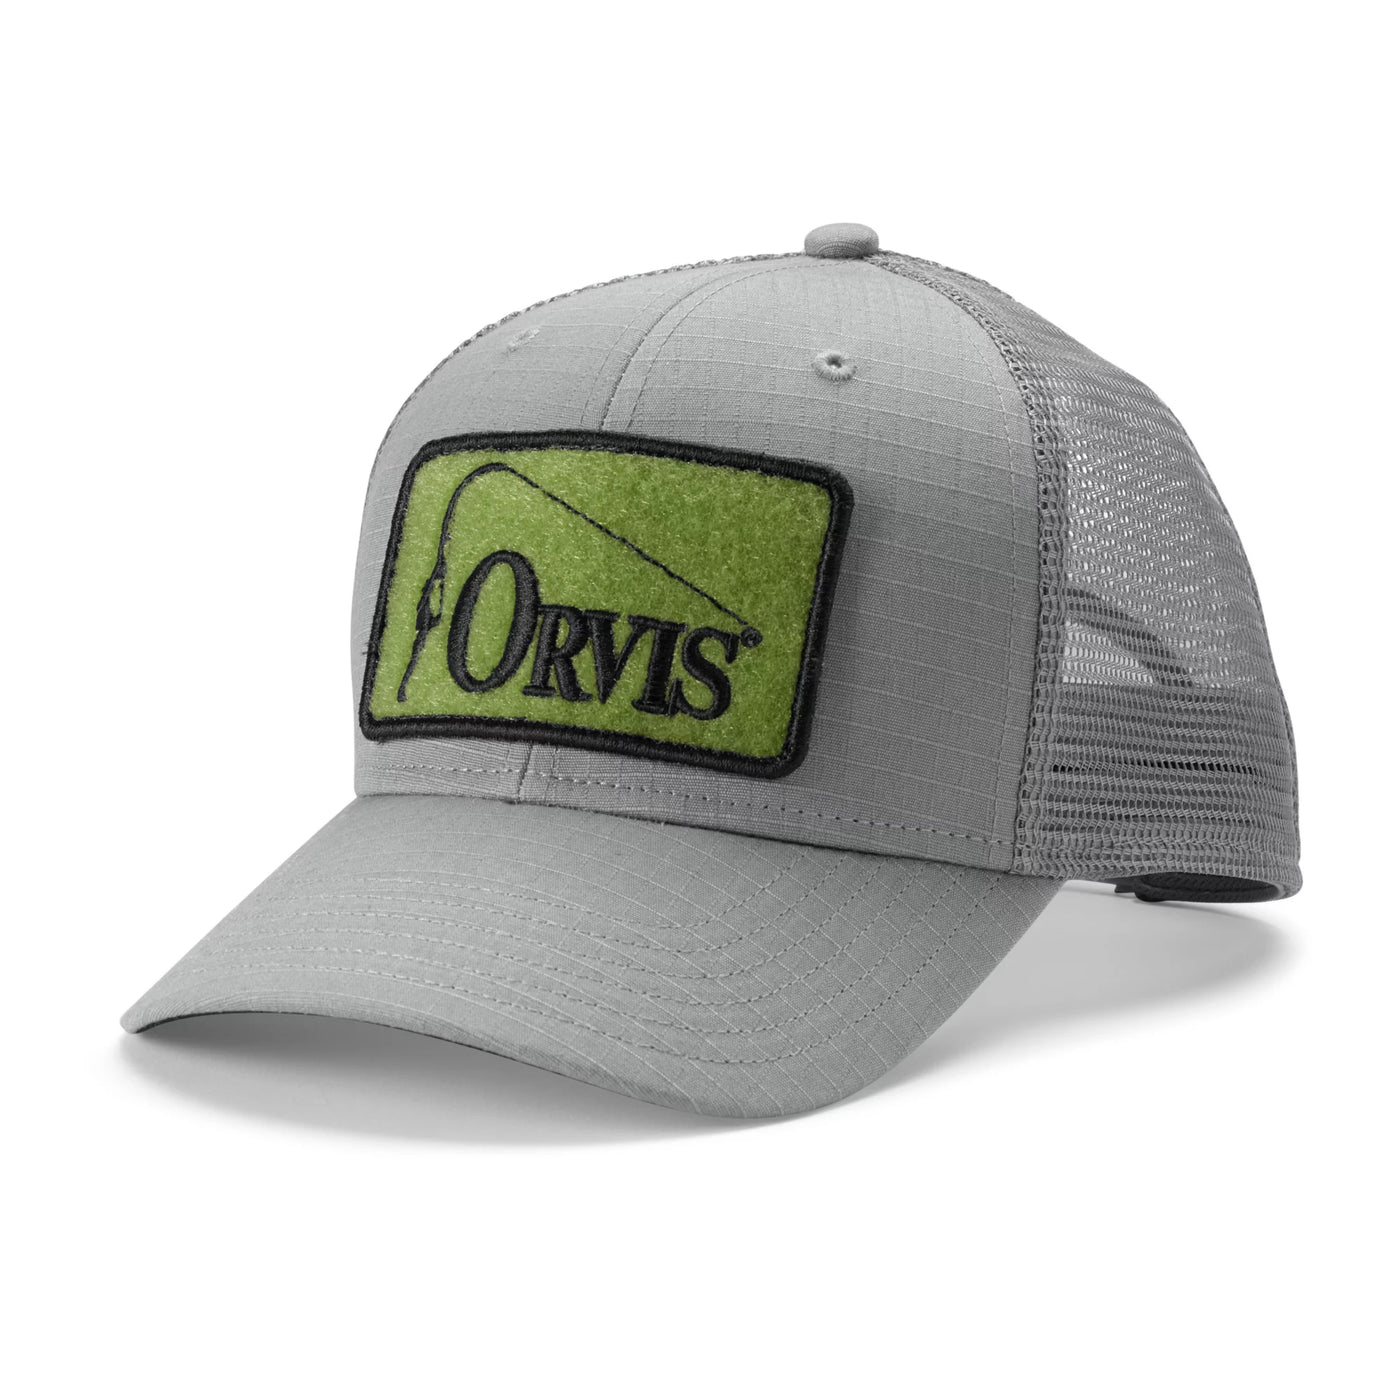 Orvis Ripstop Covert Trucker Hat - Grey/Green